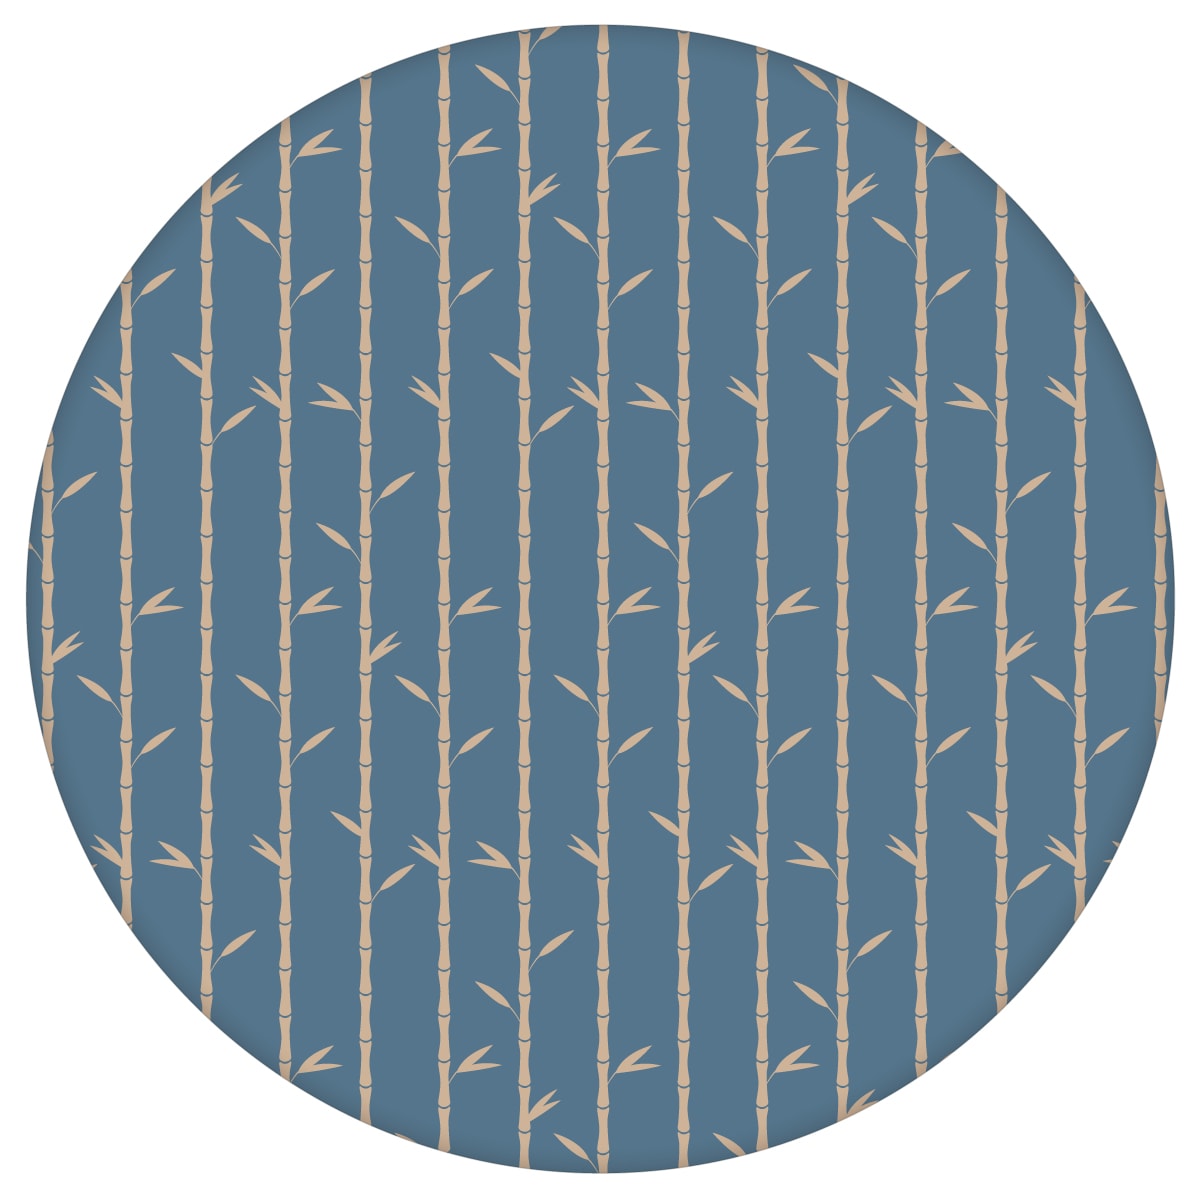 Bambus Tapete "Bamboo Garden", blau beige, grafische Blumentapete für Flur, Büroaus dem GMM-BERLIN.com Sortiment: blaue Tapete zur Raumgestaltung: #00163 #Bambus #beige #beige – cremefarbene Tapeten #blau #Blaue Tapeten #blumen #Blumentapete #Büro #flur #grafisch #Natur #streifen für individuelles Interiordesign